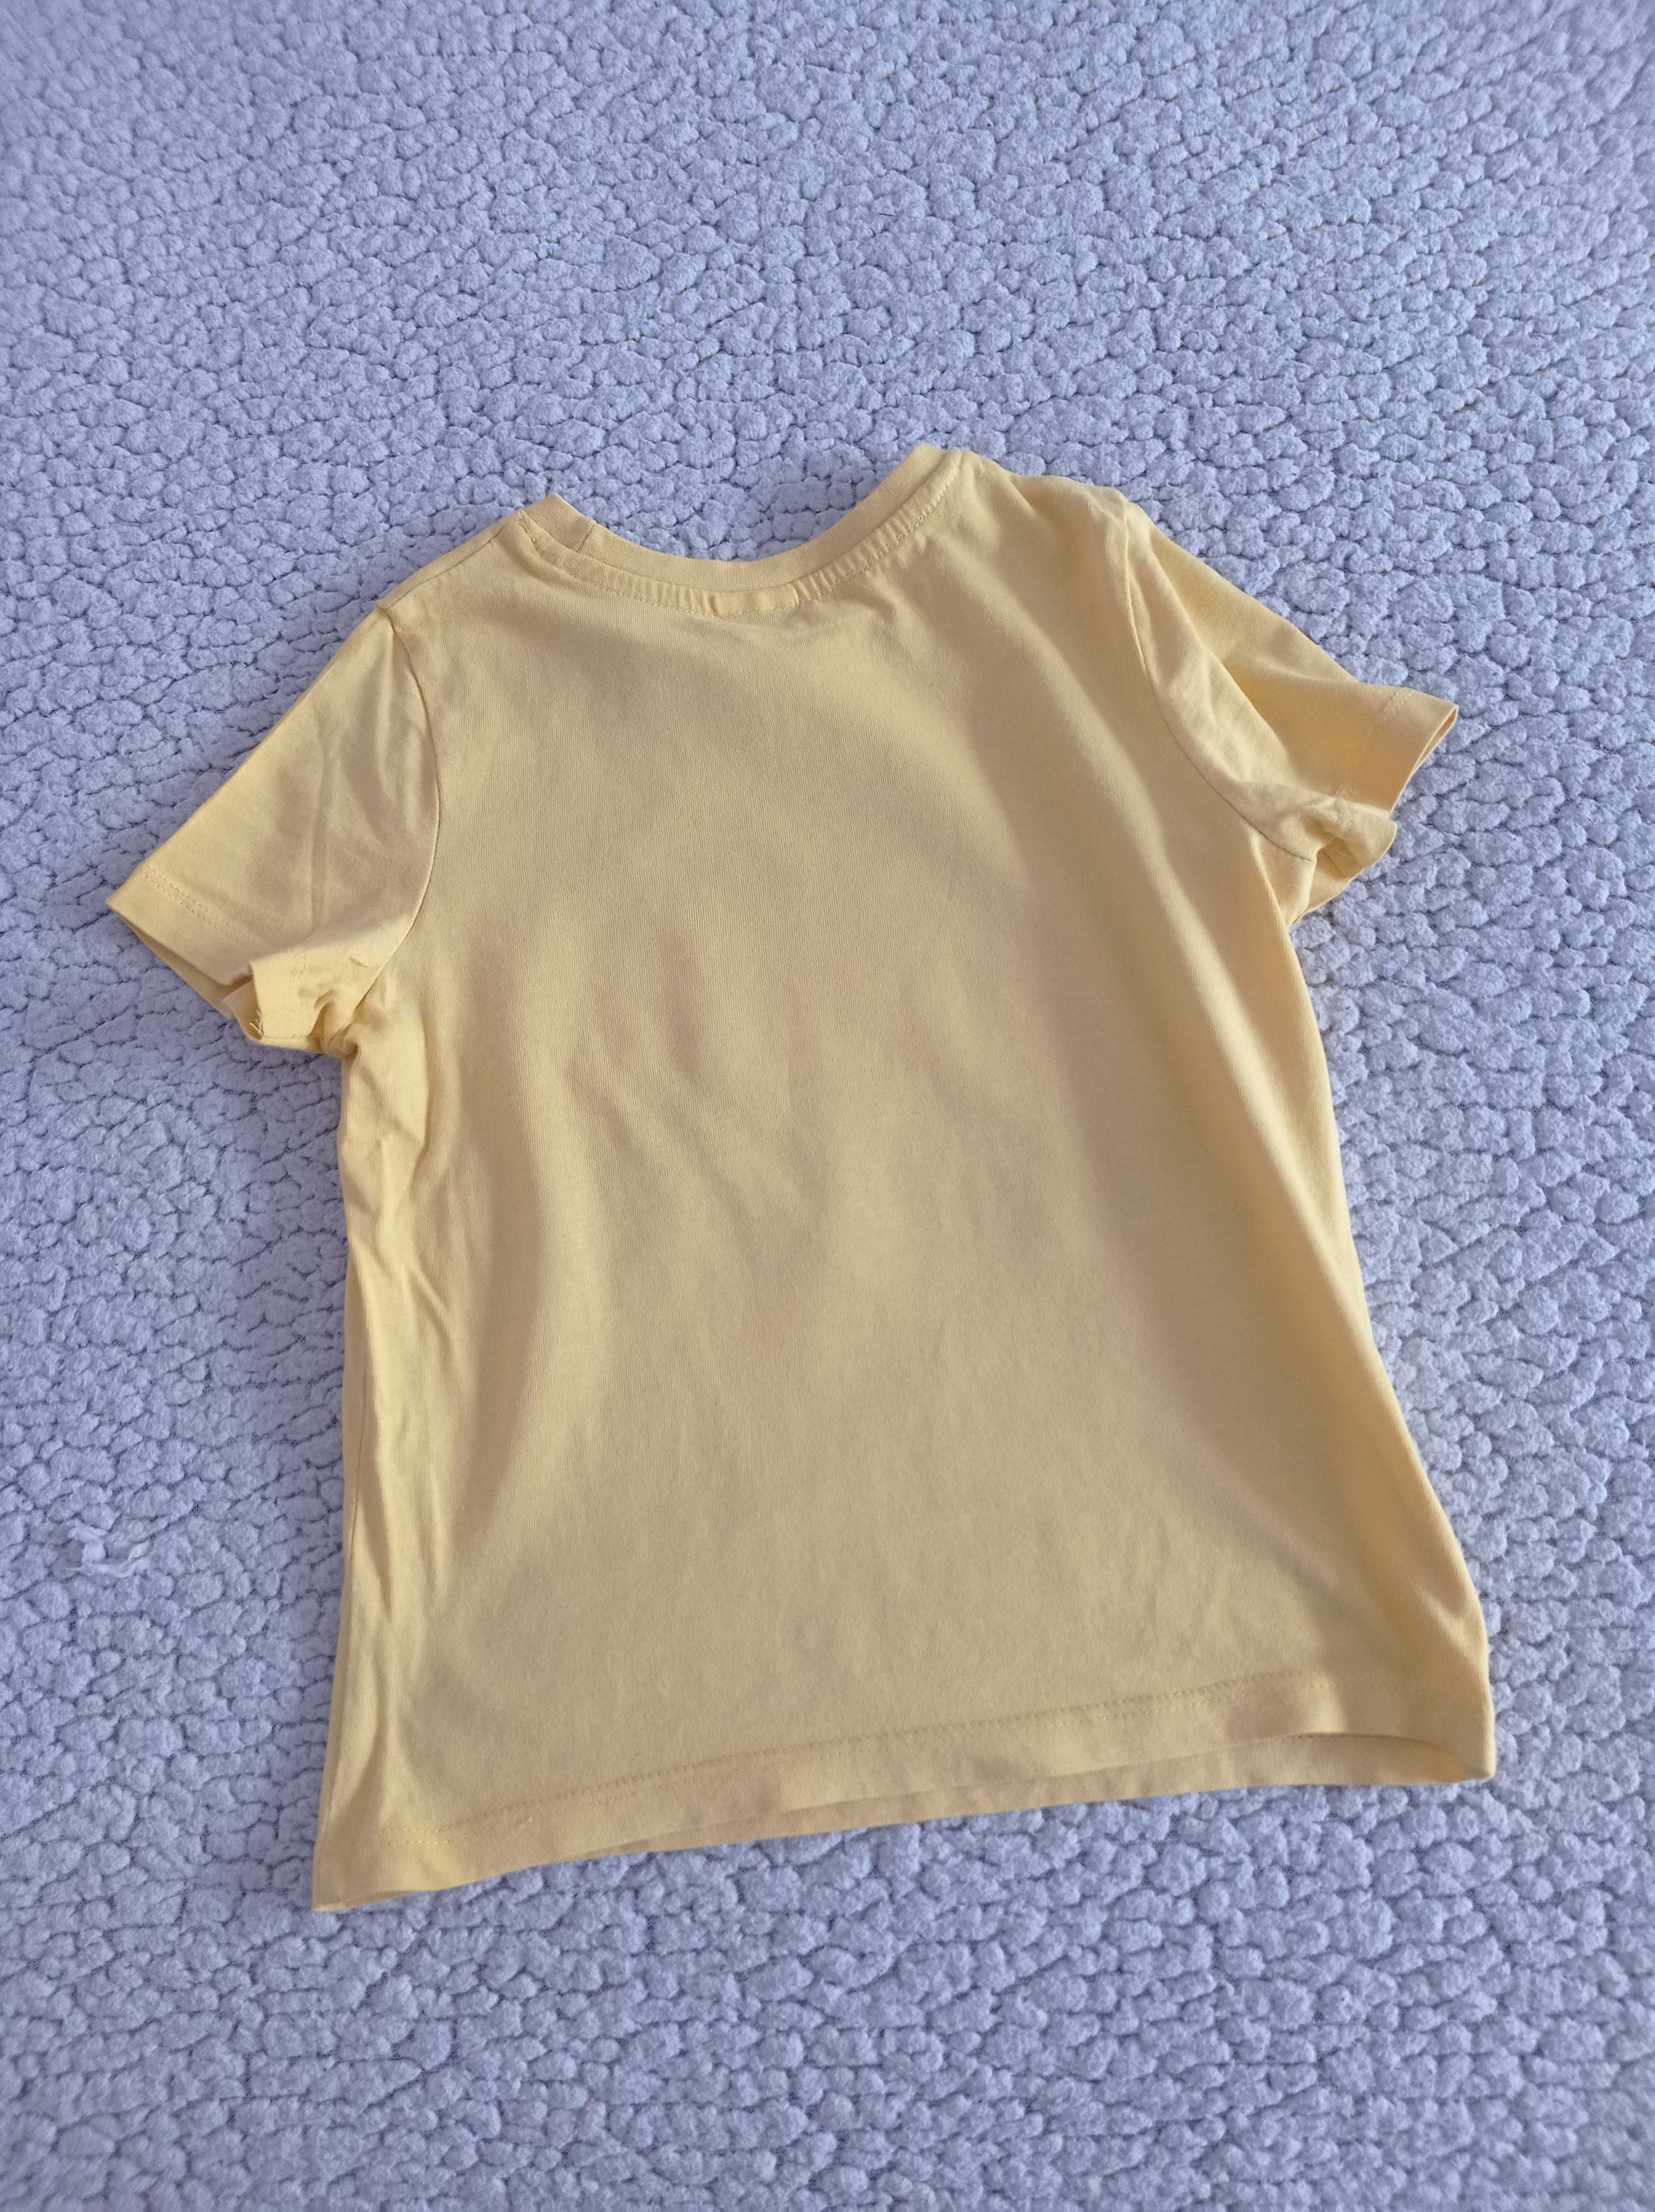 t-shirt żółty ze smokiem 104